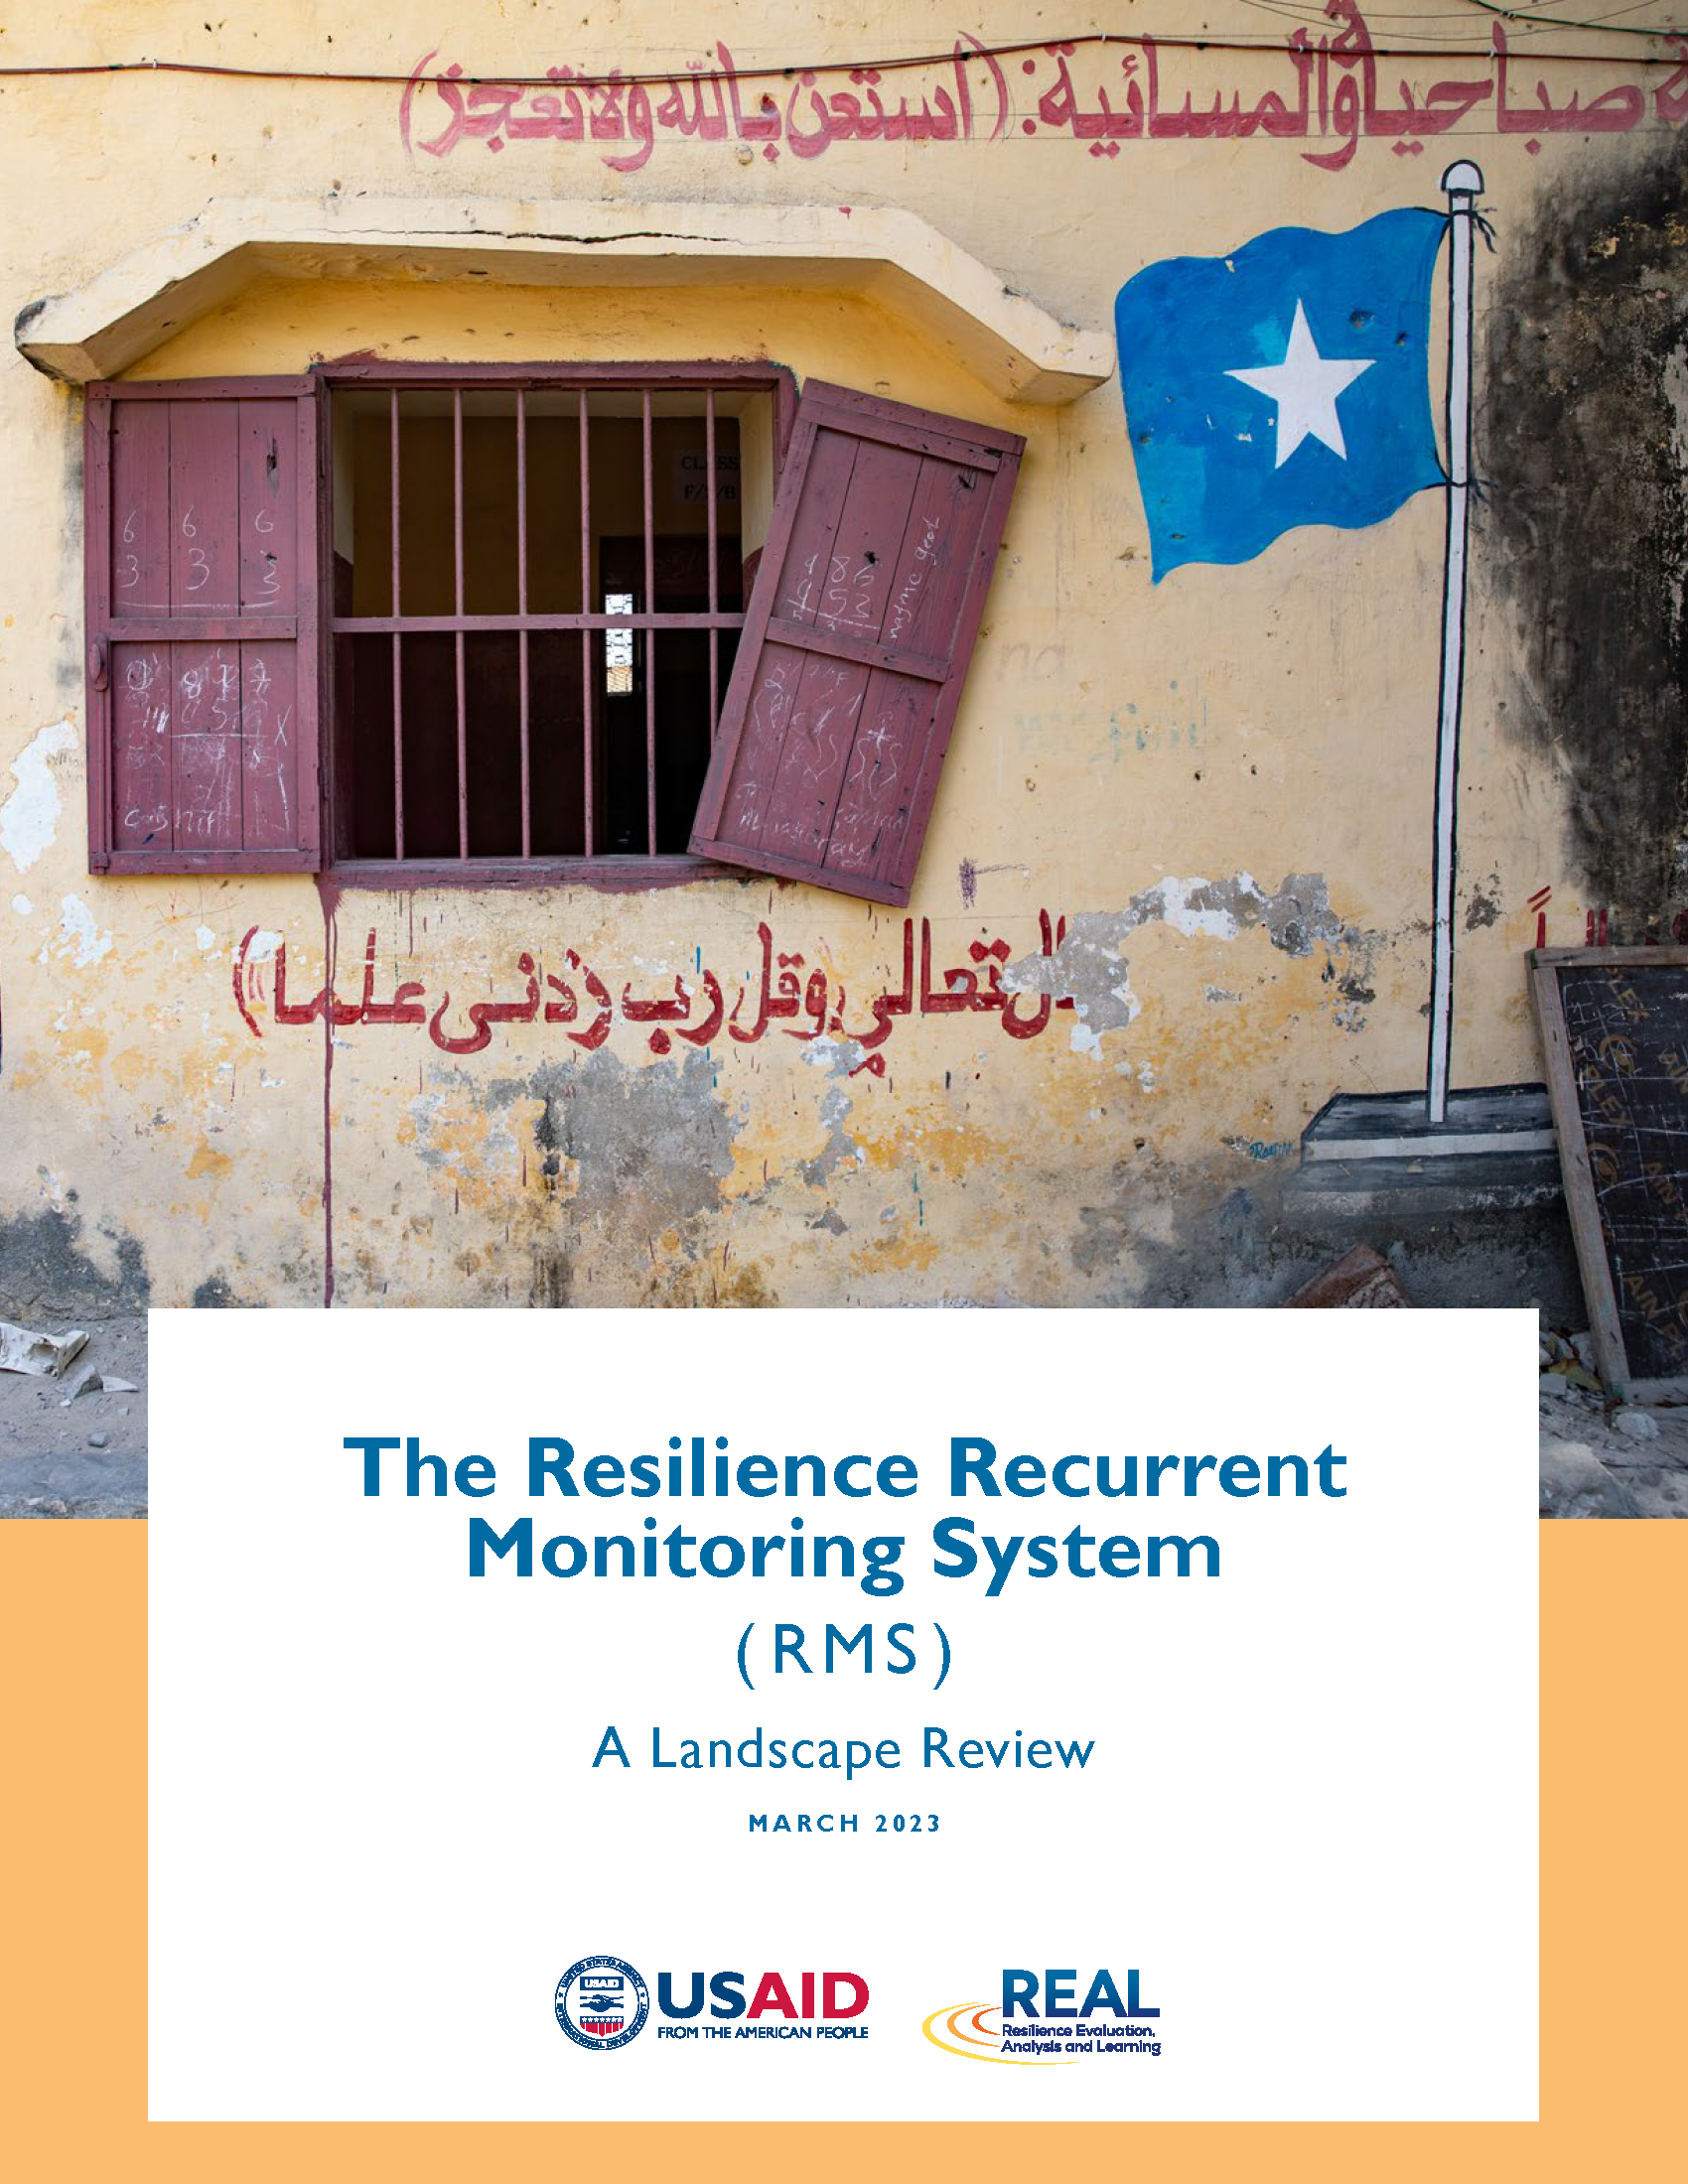 Page de couverture du rapport - Le système de surveillance récurrente de la résilience (RMS) : un examen du paysage